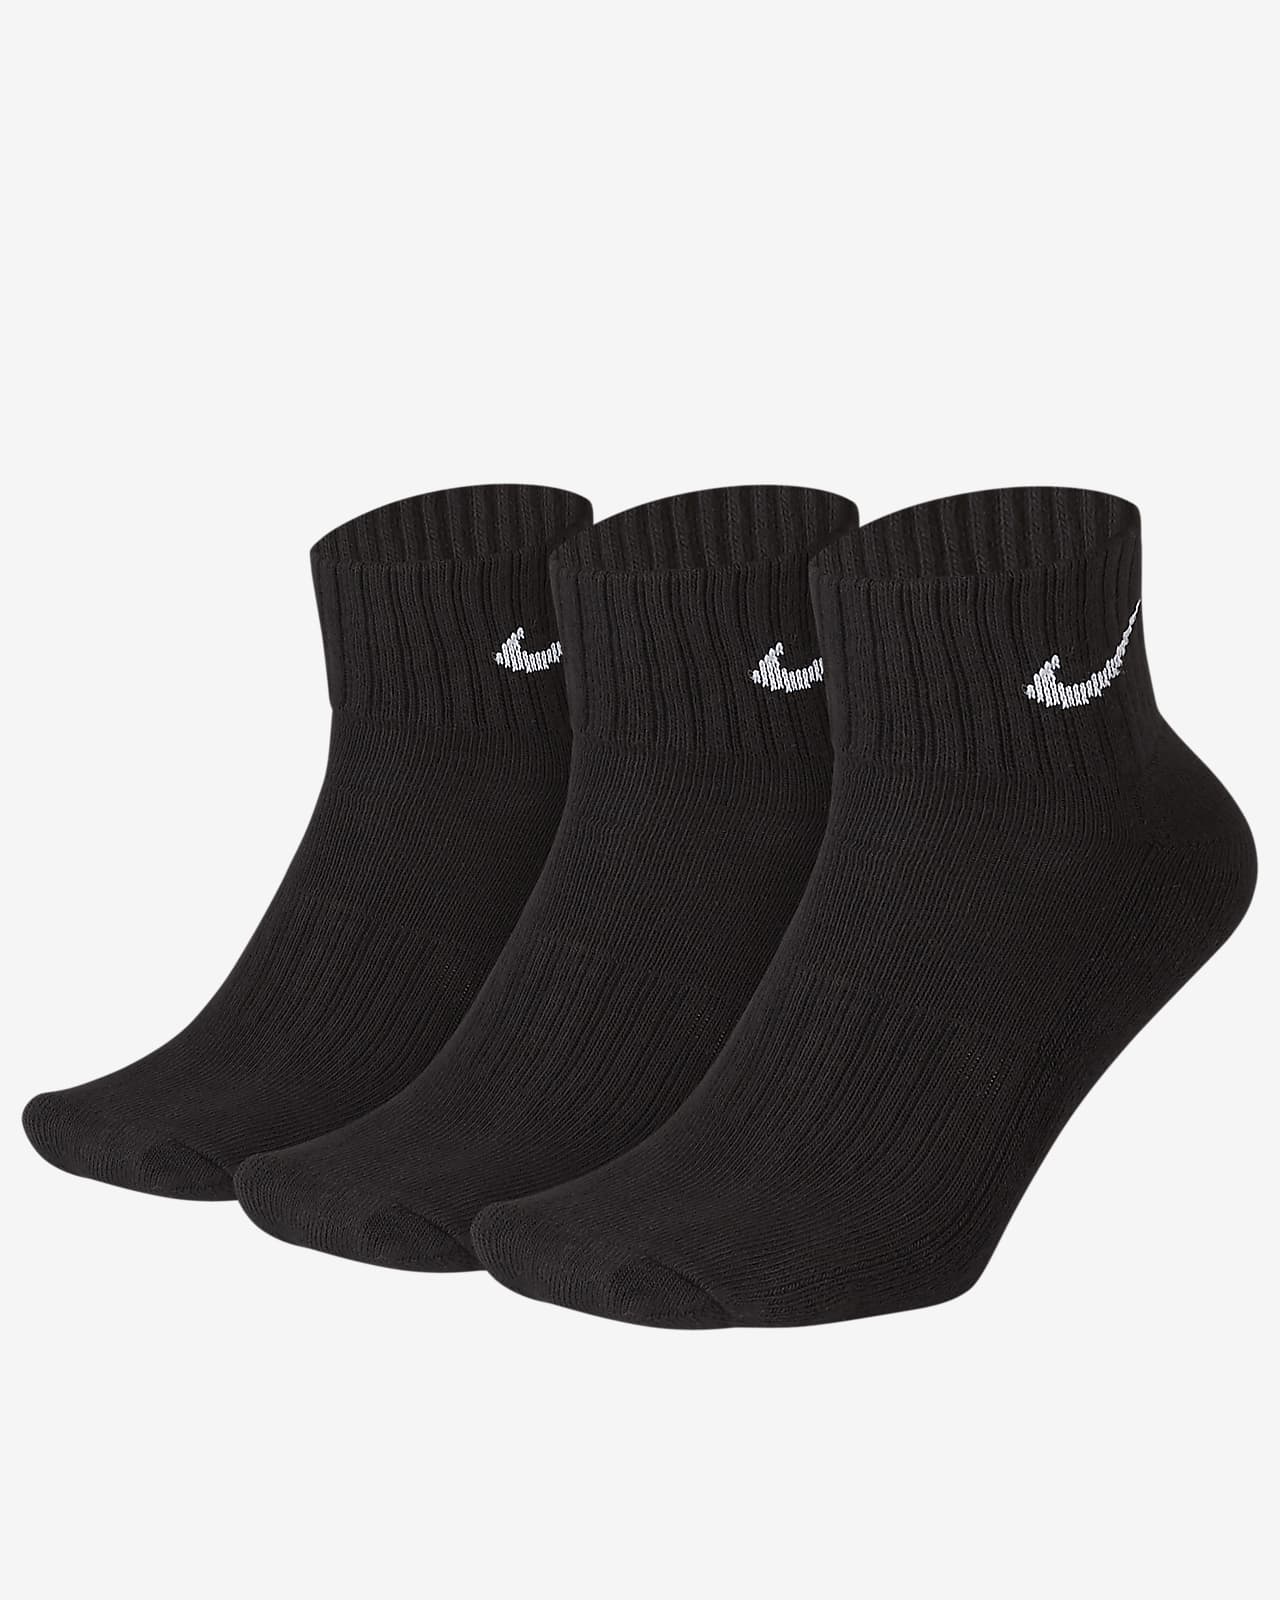 Calcetines al tobillo acolchados Nike (3 pares)